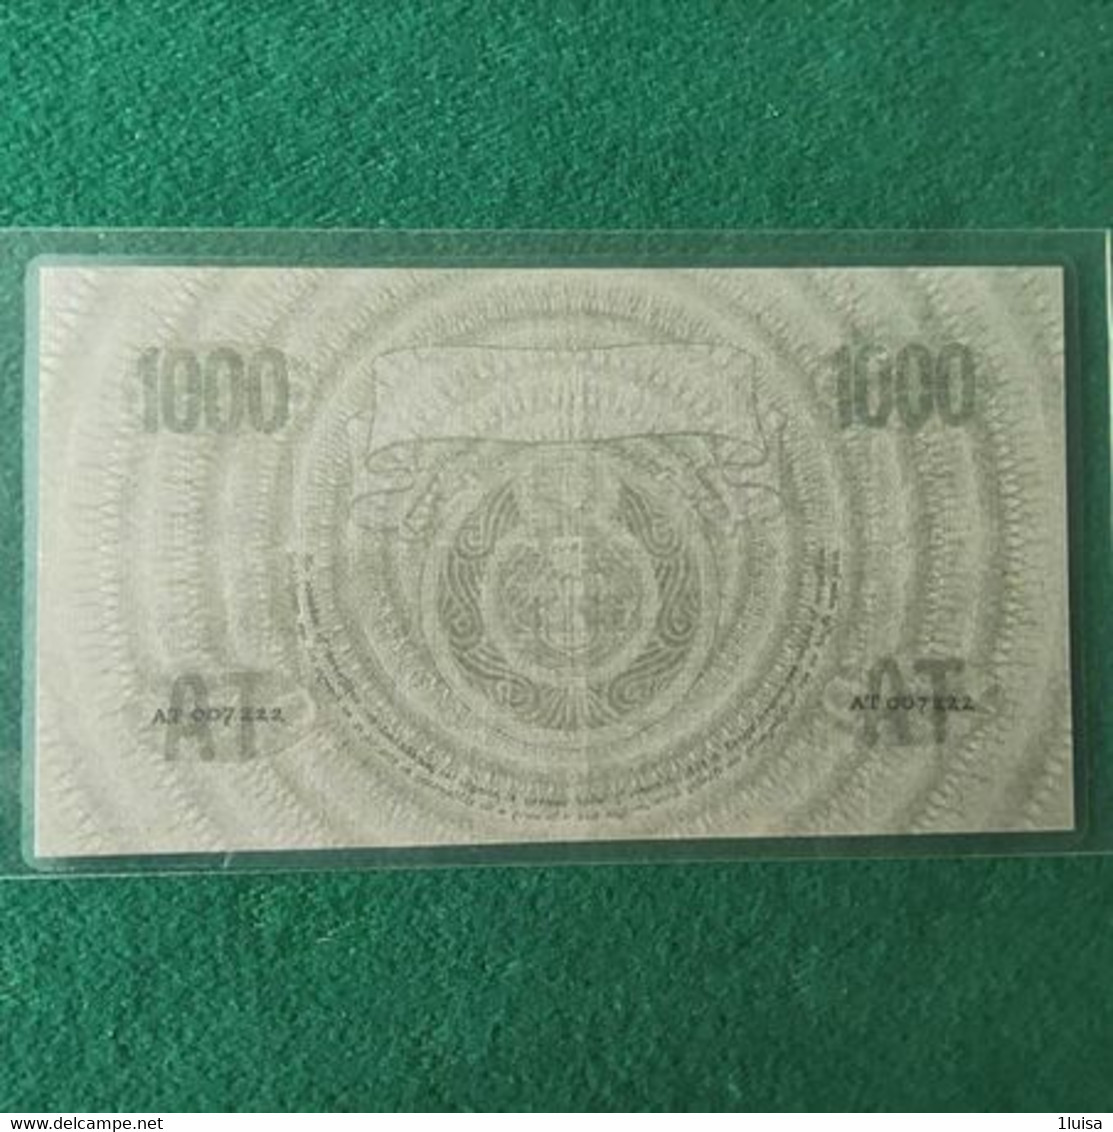 PAESI BASSI 1000 GULDEN 1938 - 10 Florín Holandés (gulden)